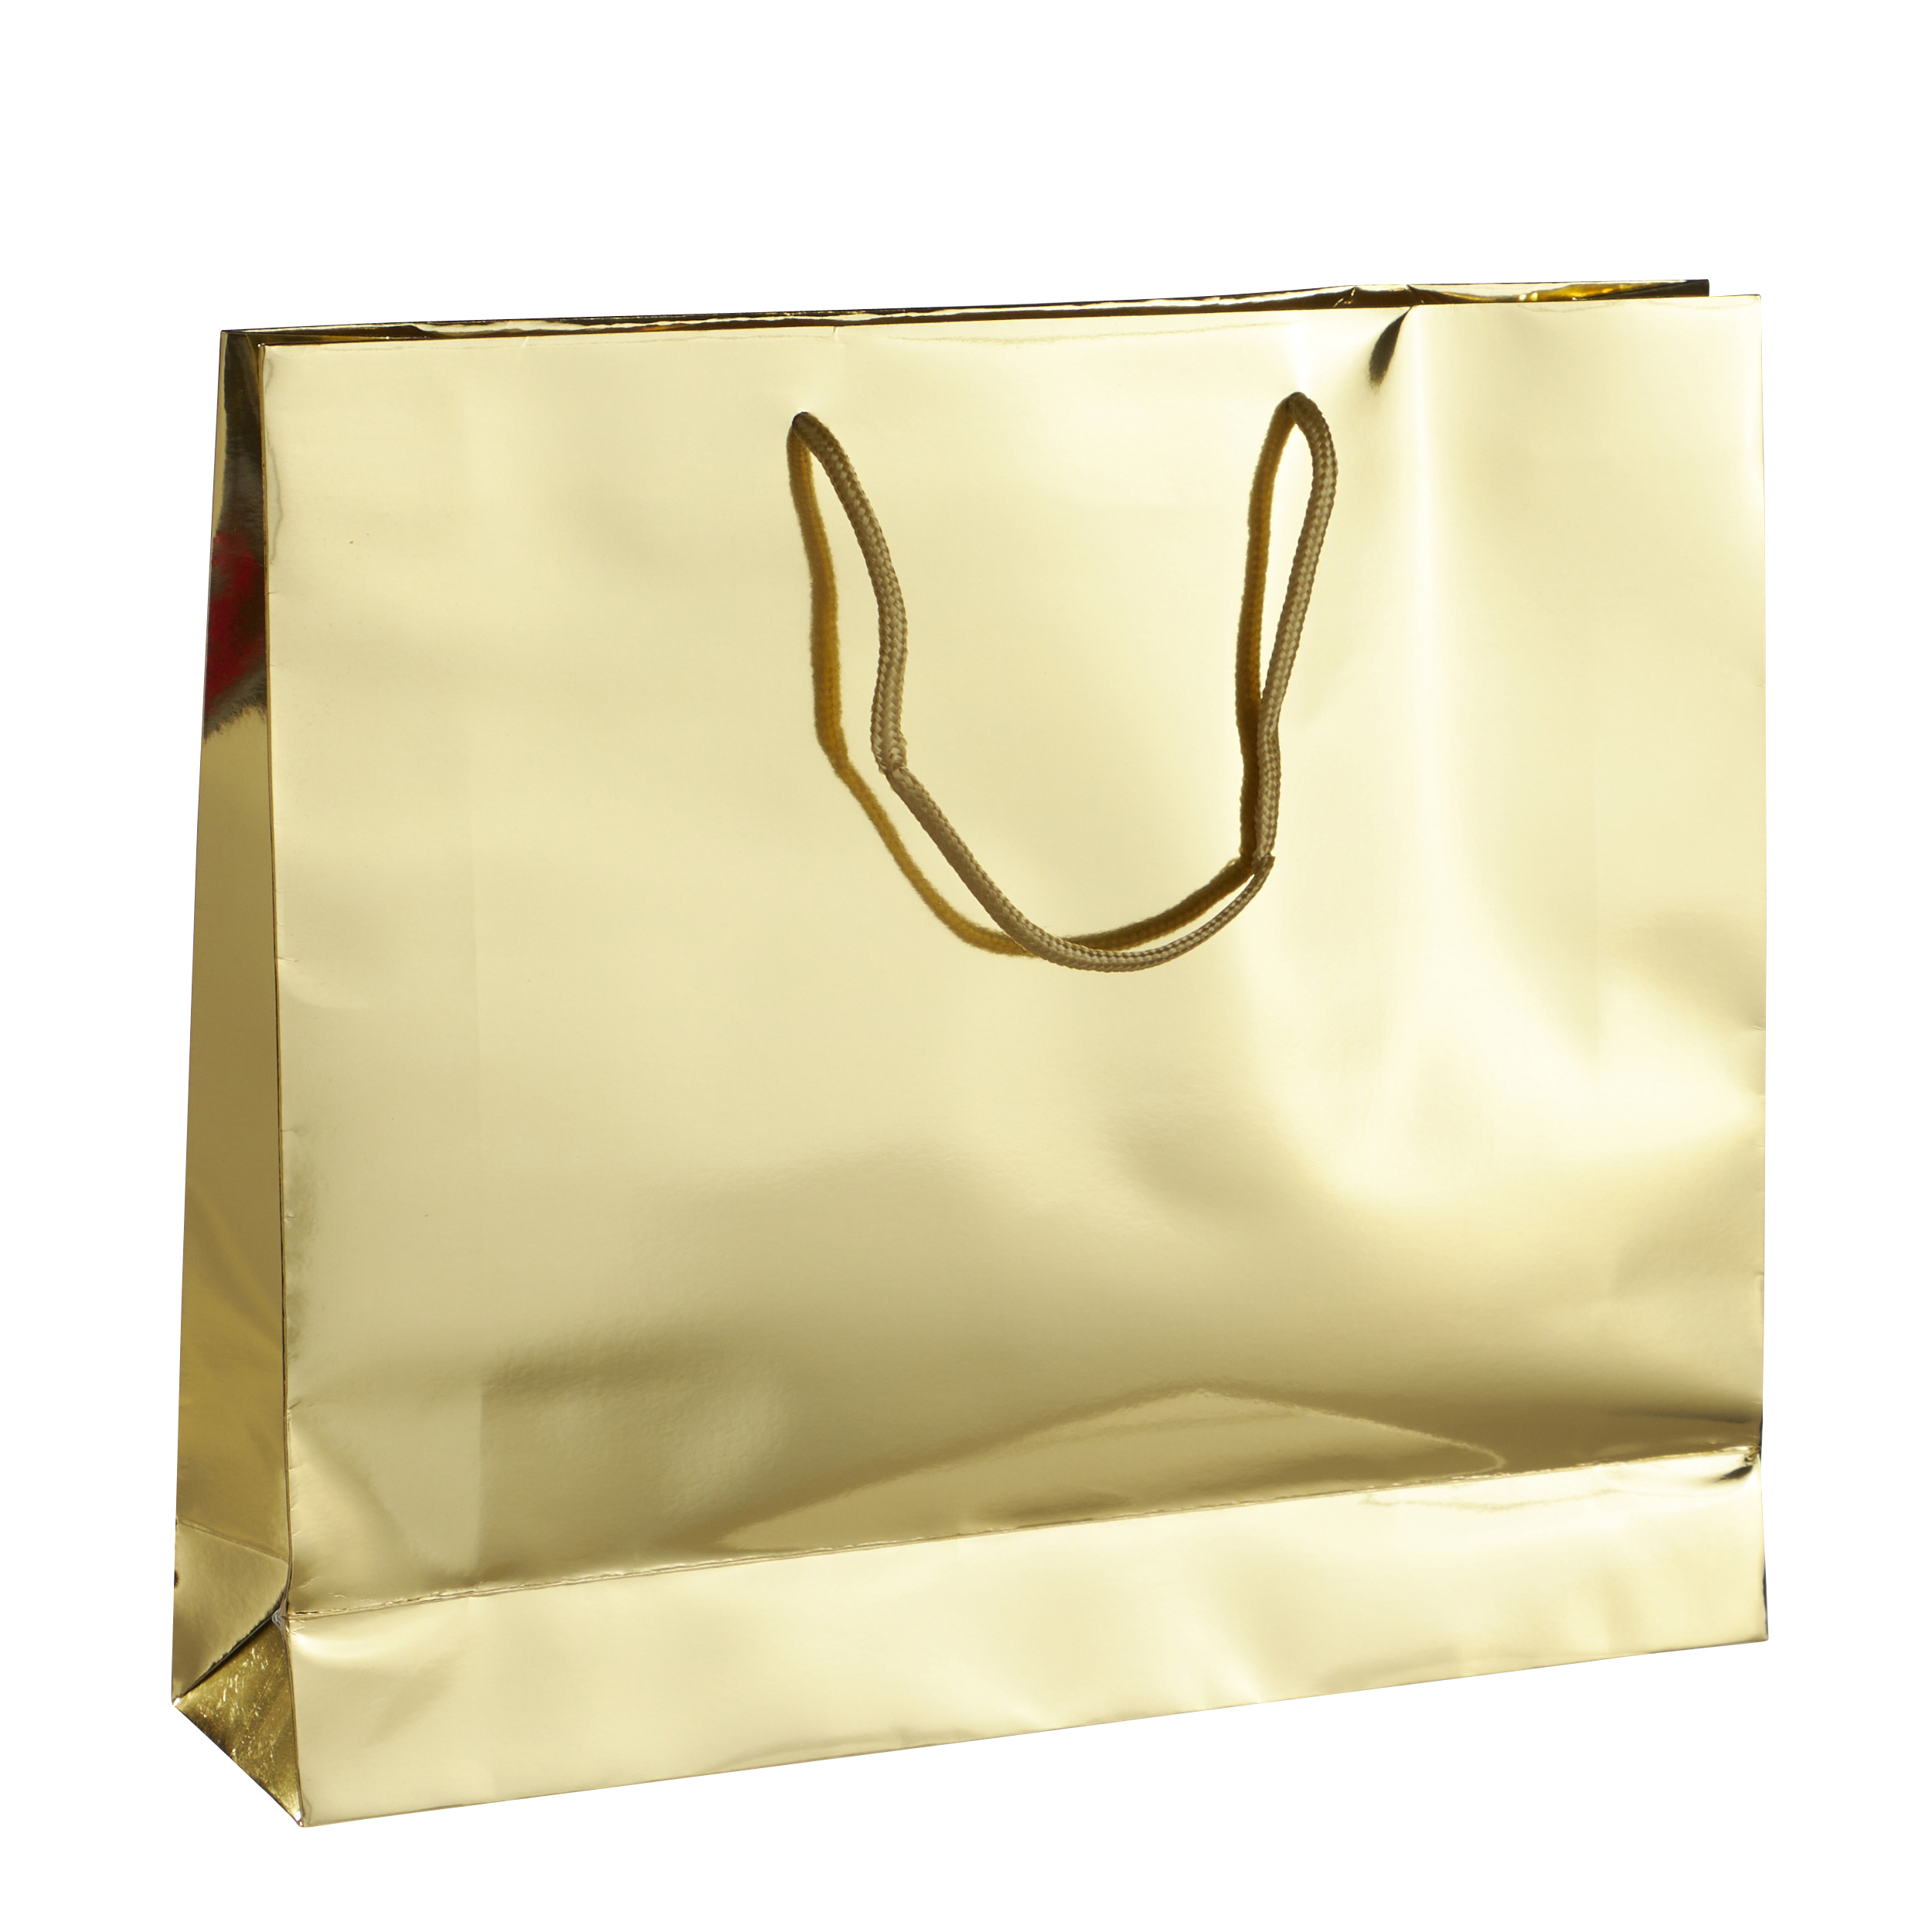 10 feuilles de papier de soie doré, accessoire emballage cadeaux doré.